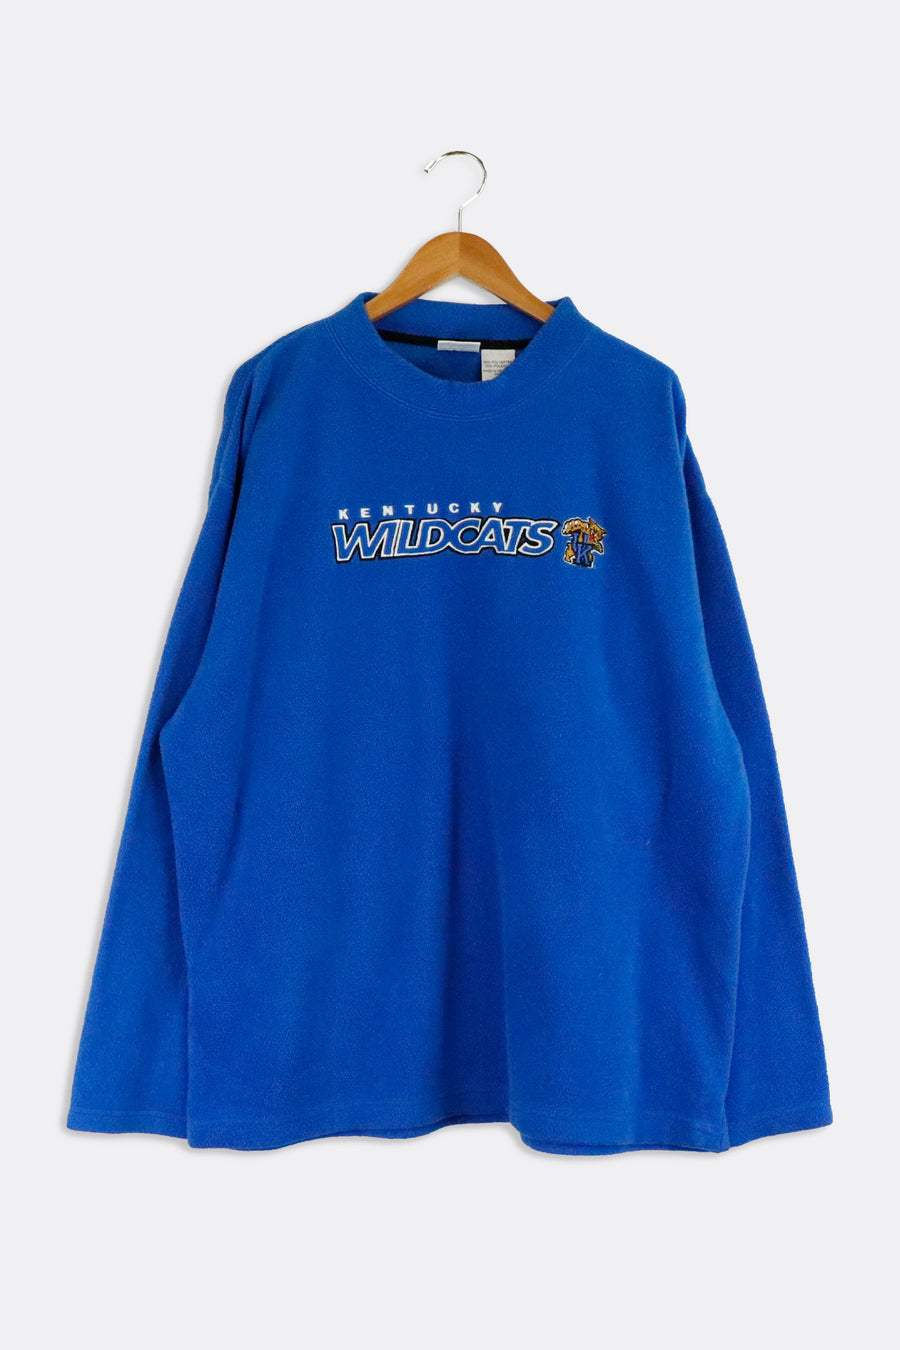 Vintage Kentucky Wildcats Fleece Sweatshirt Sz 2XL